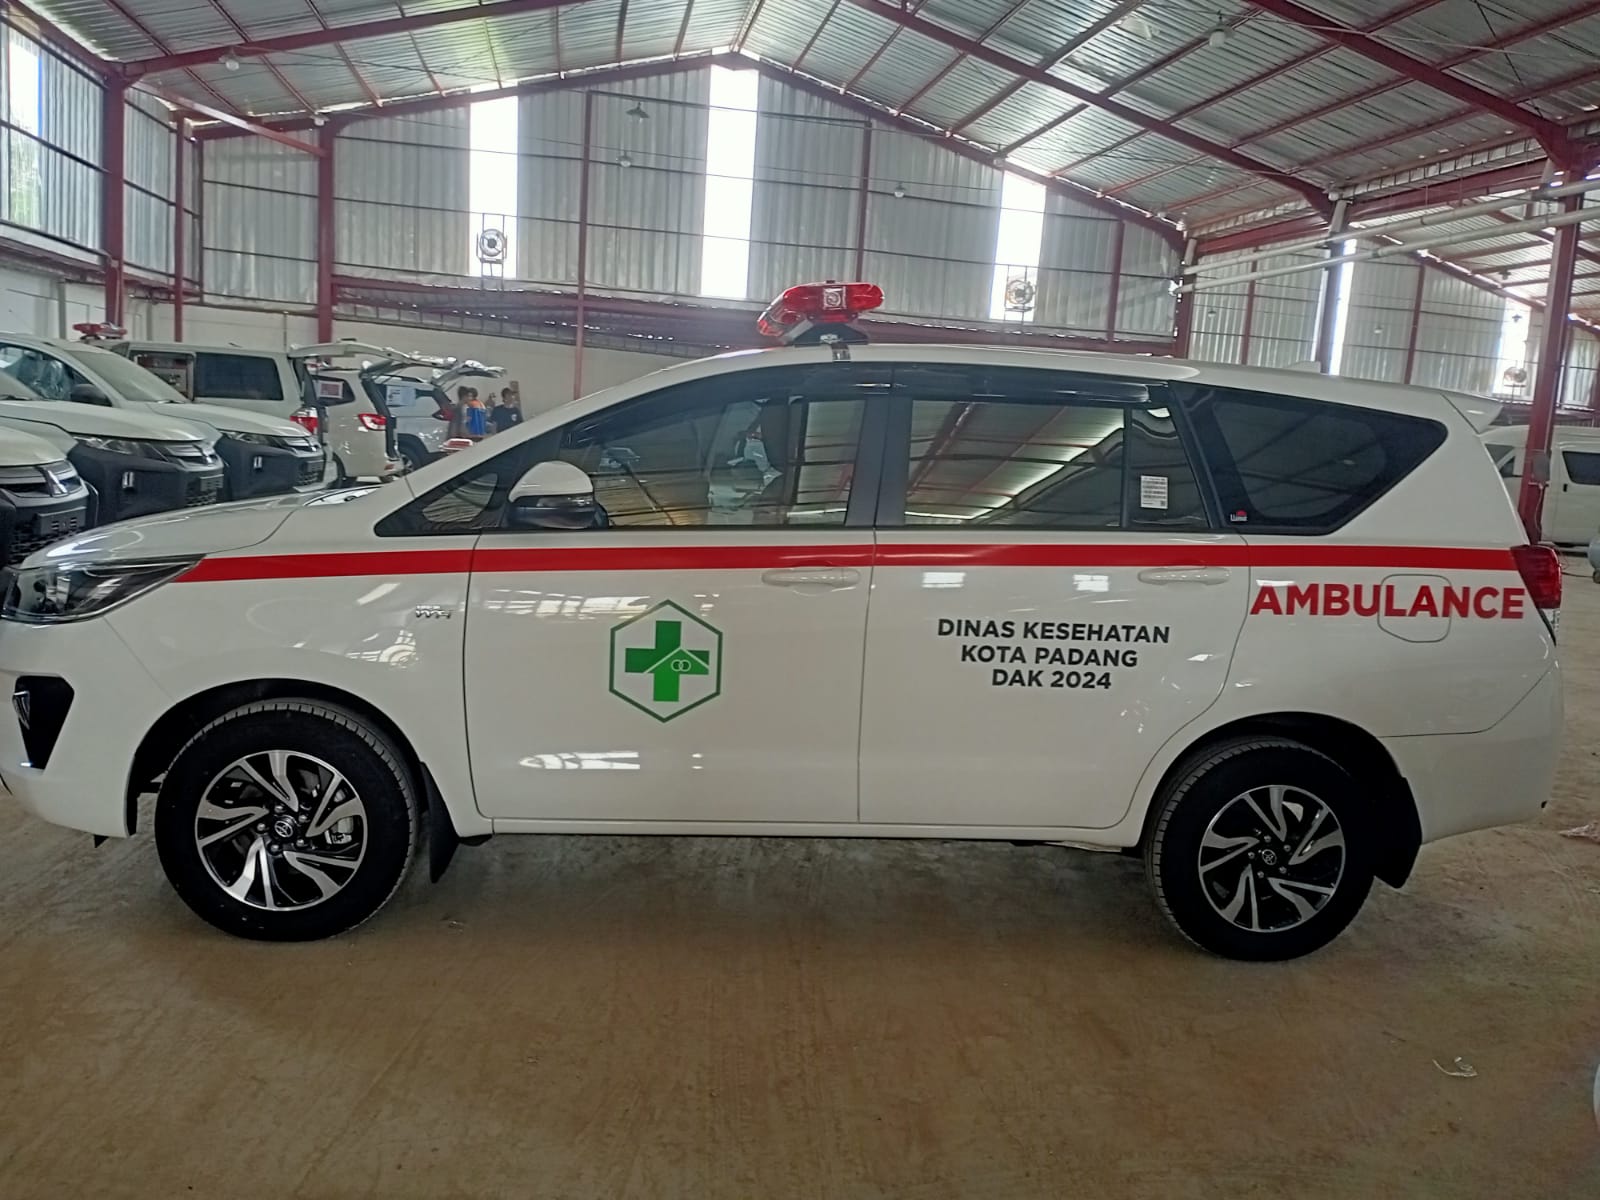 Harga Karoseri Ambulance Termurah Surabaya